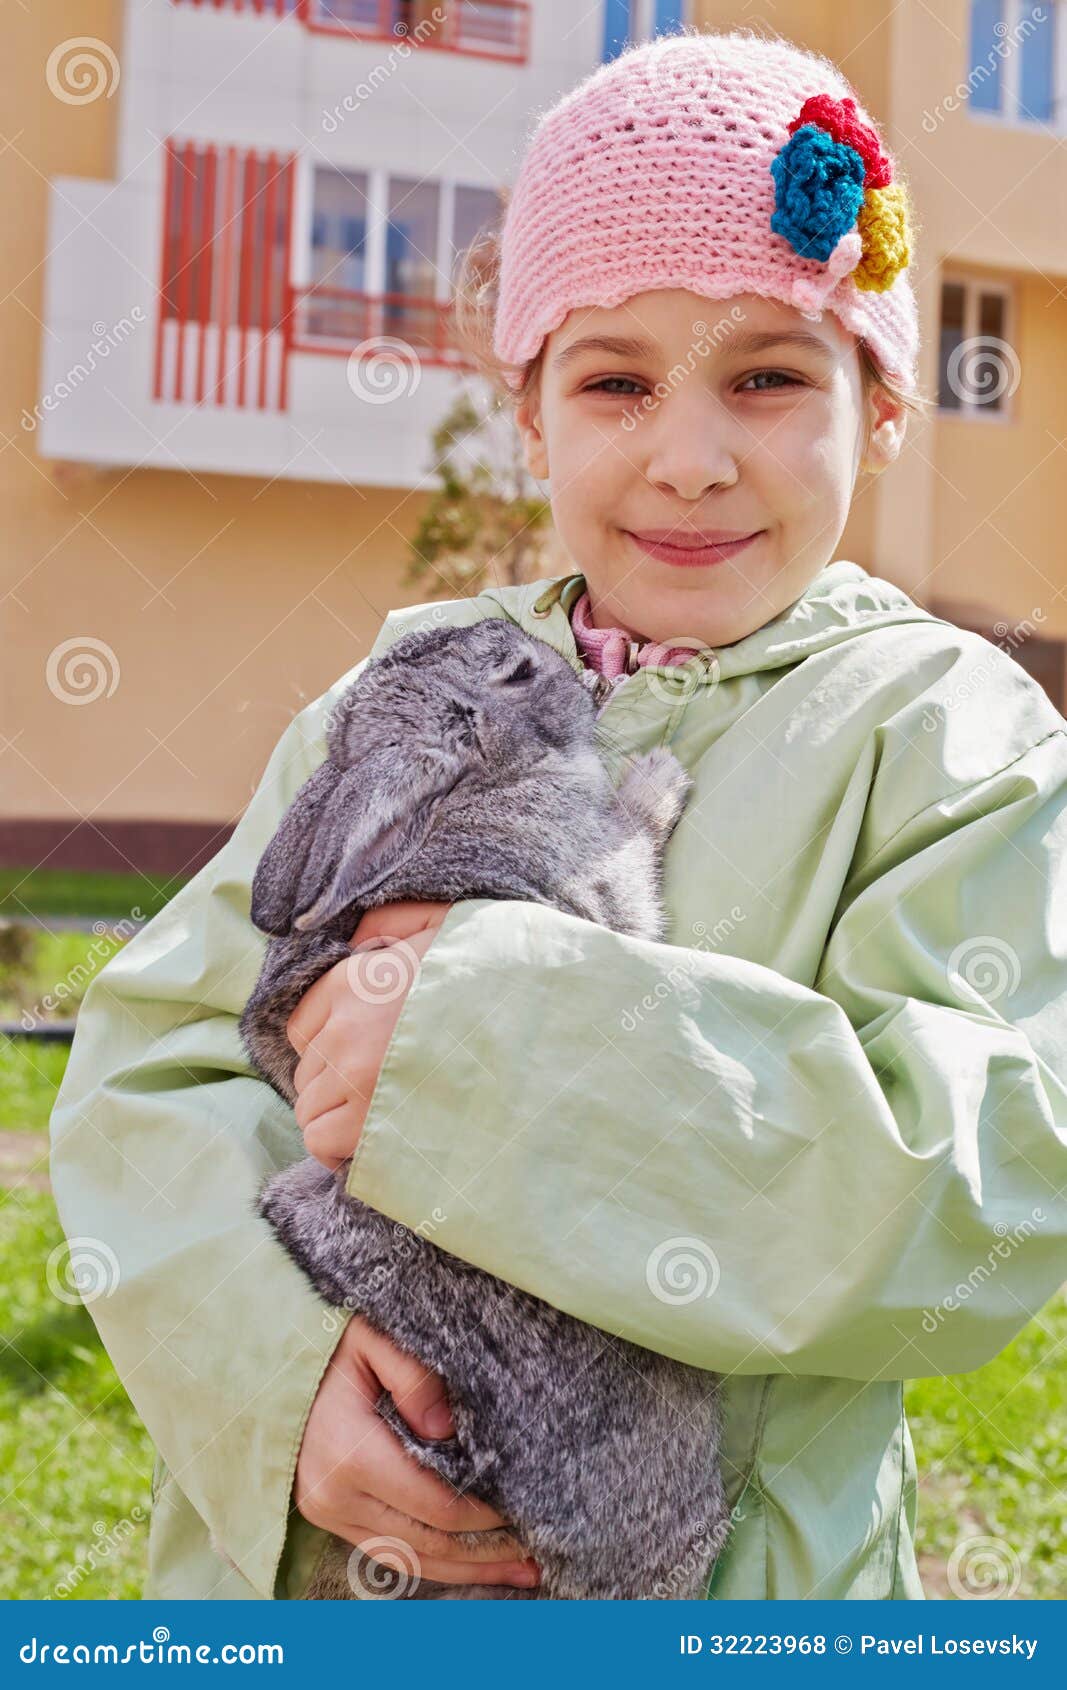 little girl in greenish jacket holds rabbit